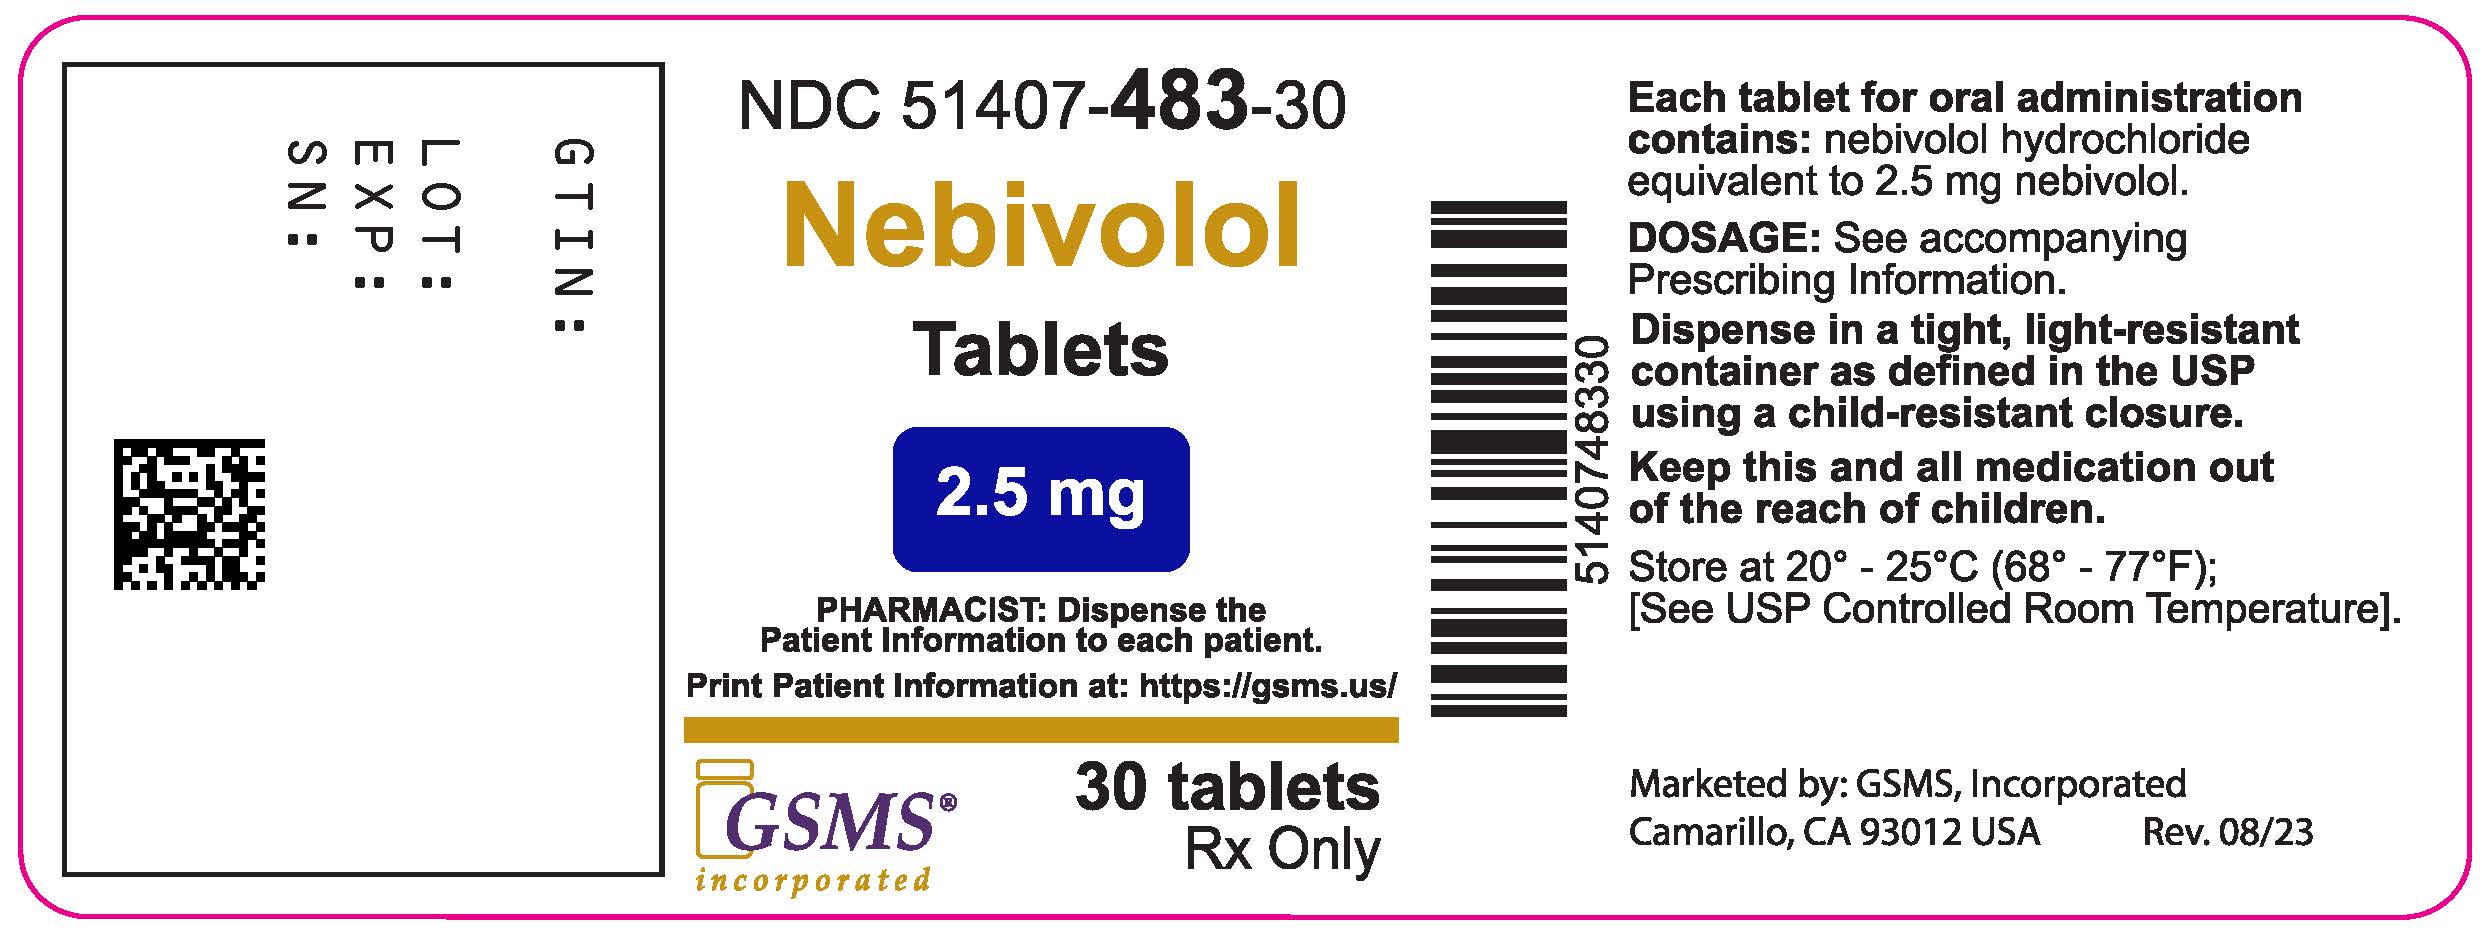 51407-483-30LB - Nevibolol Tablet - Rev. 0823.jpg